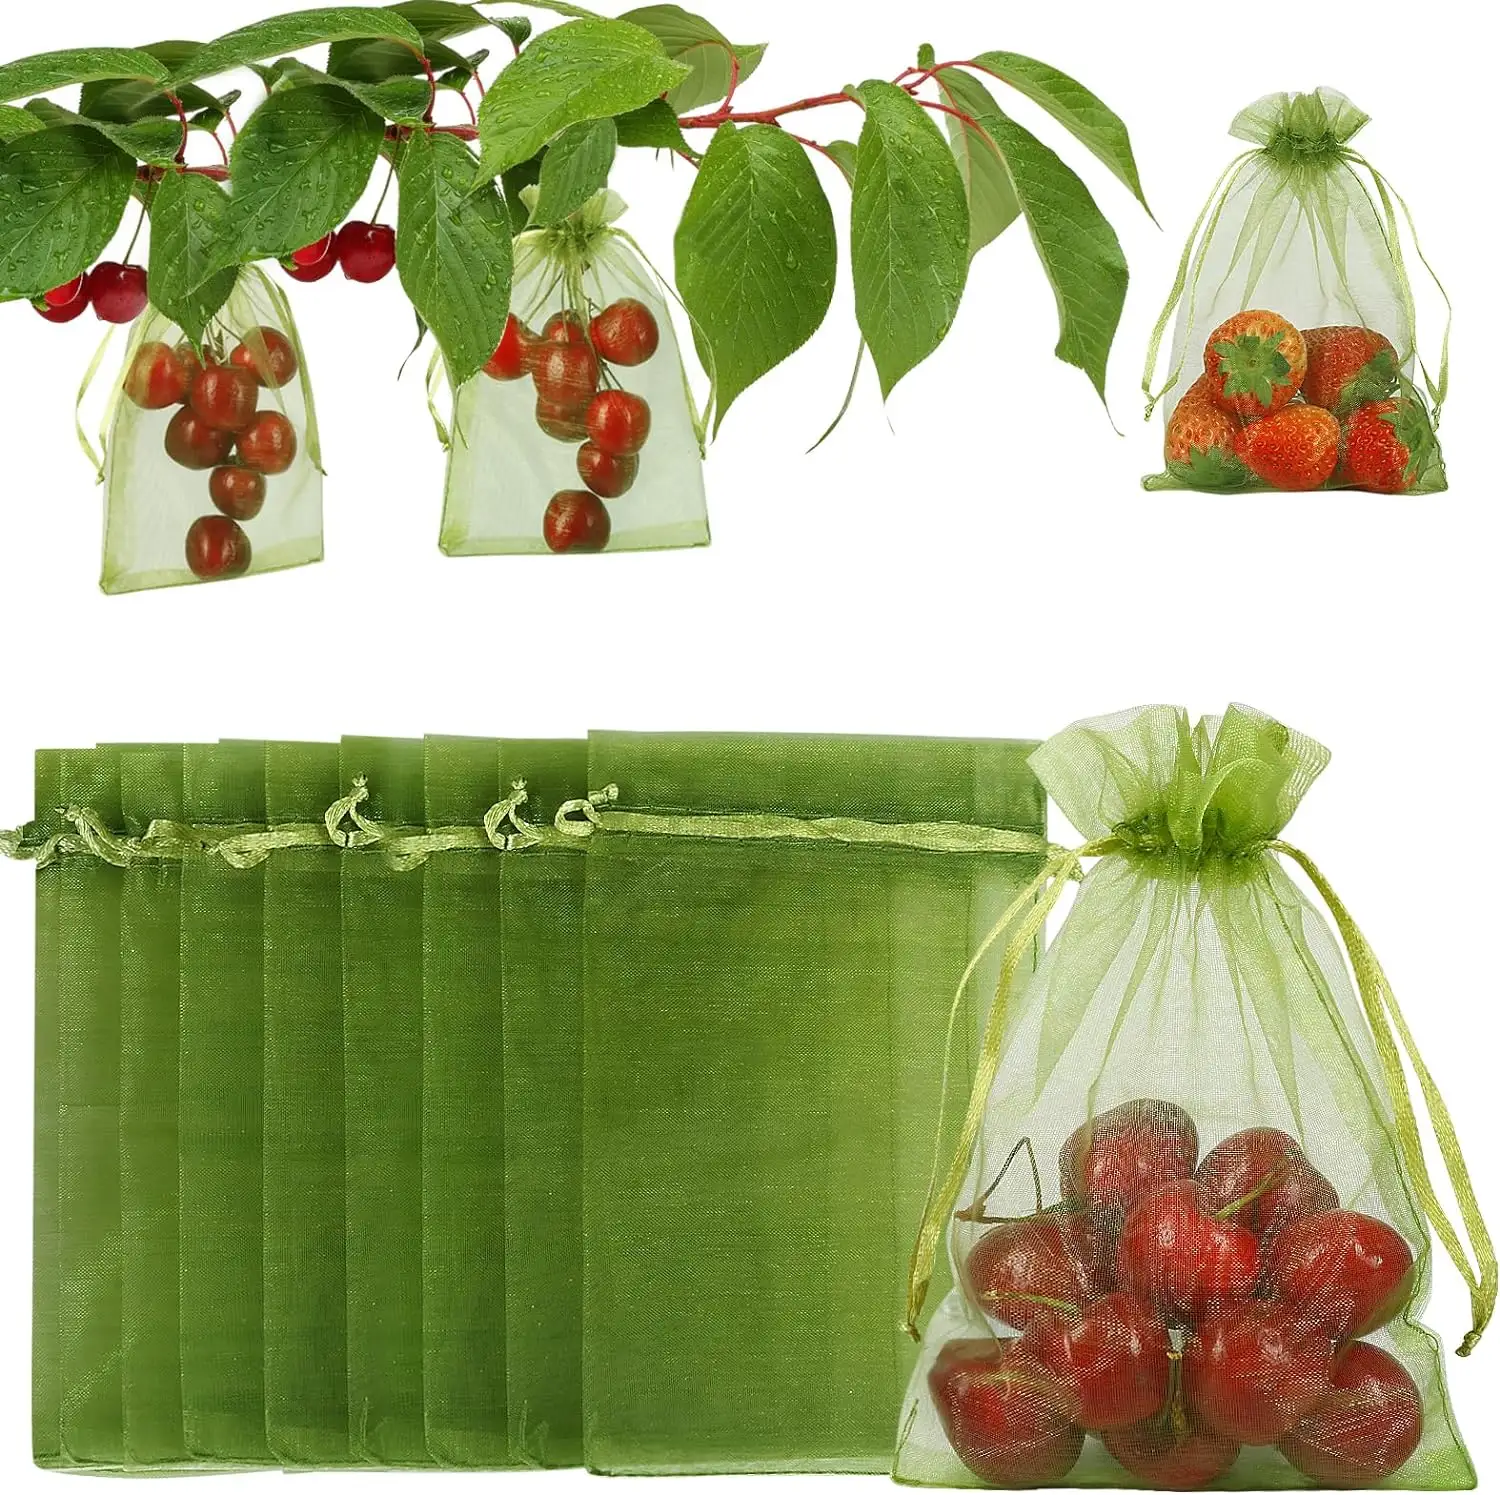 100 pcs trái cây bảo vệ túi trái cây lưới túi cây ăn quả màu xanh lá cây Bìa lưới túi